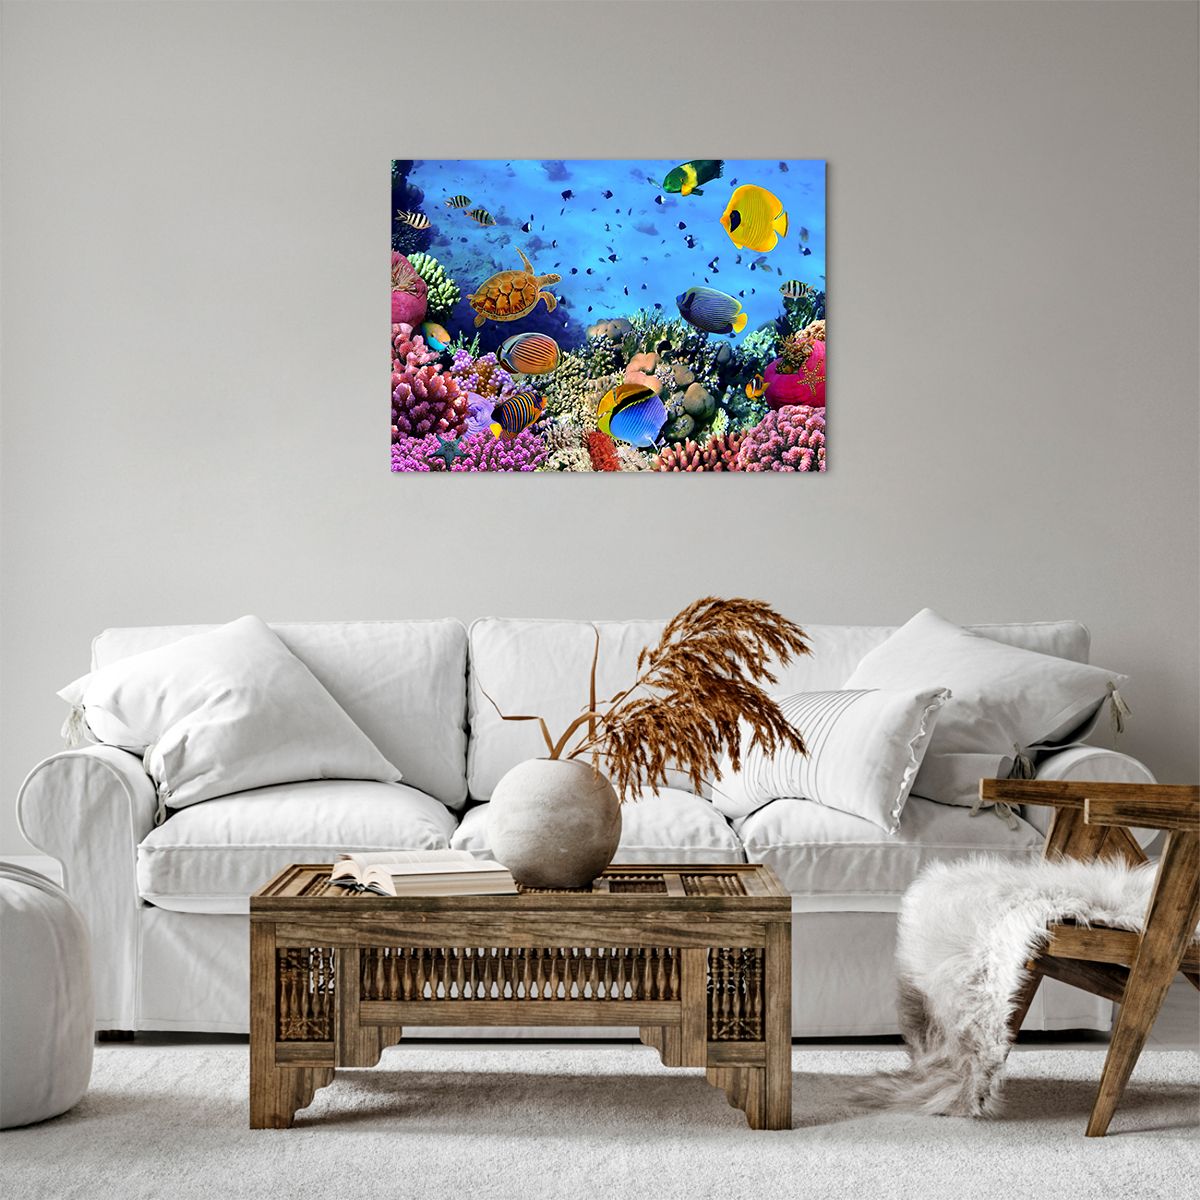 Bild auf Leinwand Korallenriff, Bild auf Leinwand Unterwasserwelt, Bild auf Leinwand Fische, Bild auf Leinwand Karibik, Bild auf Leinwand Tauchen